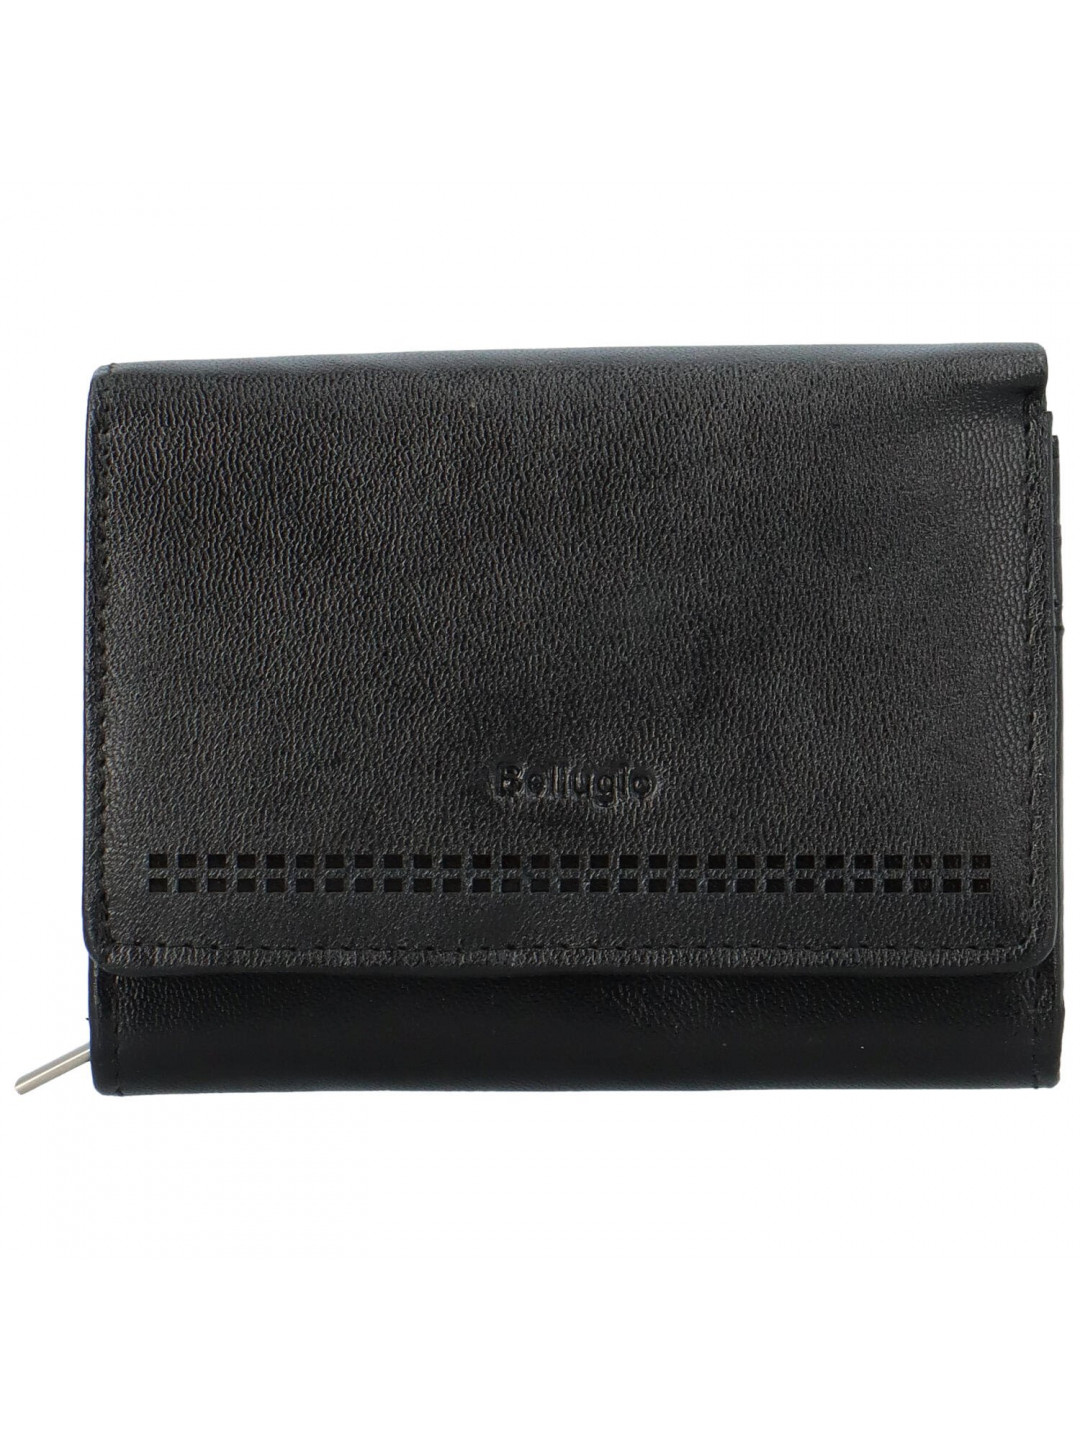 Dámská kožená malá peněženka Bellugio Aijva černá